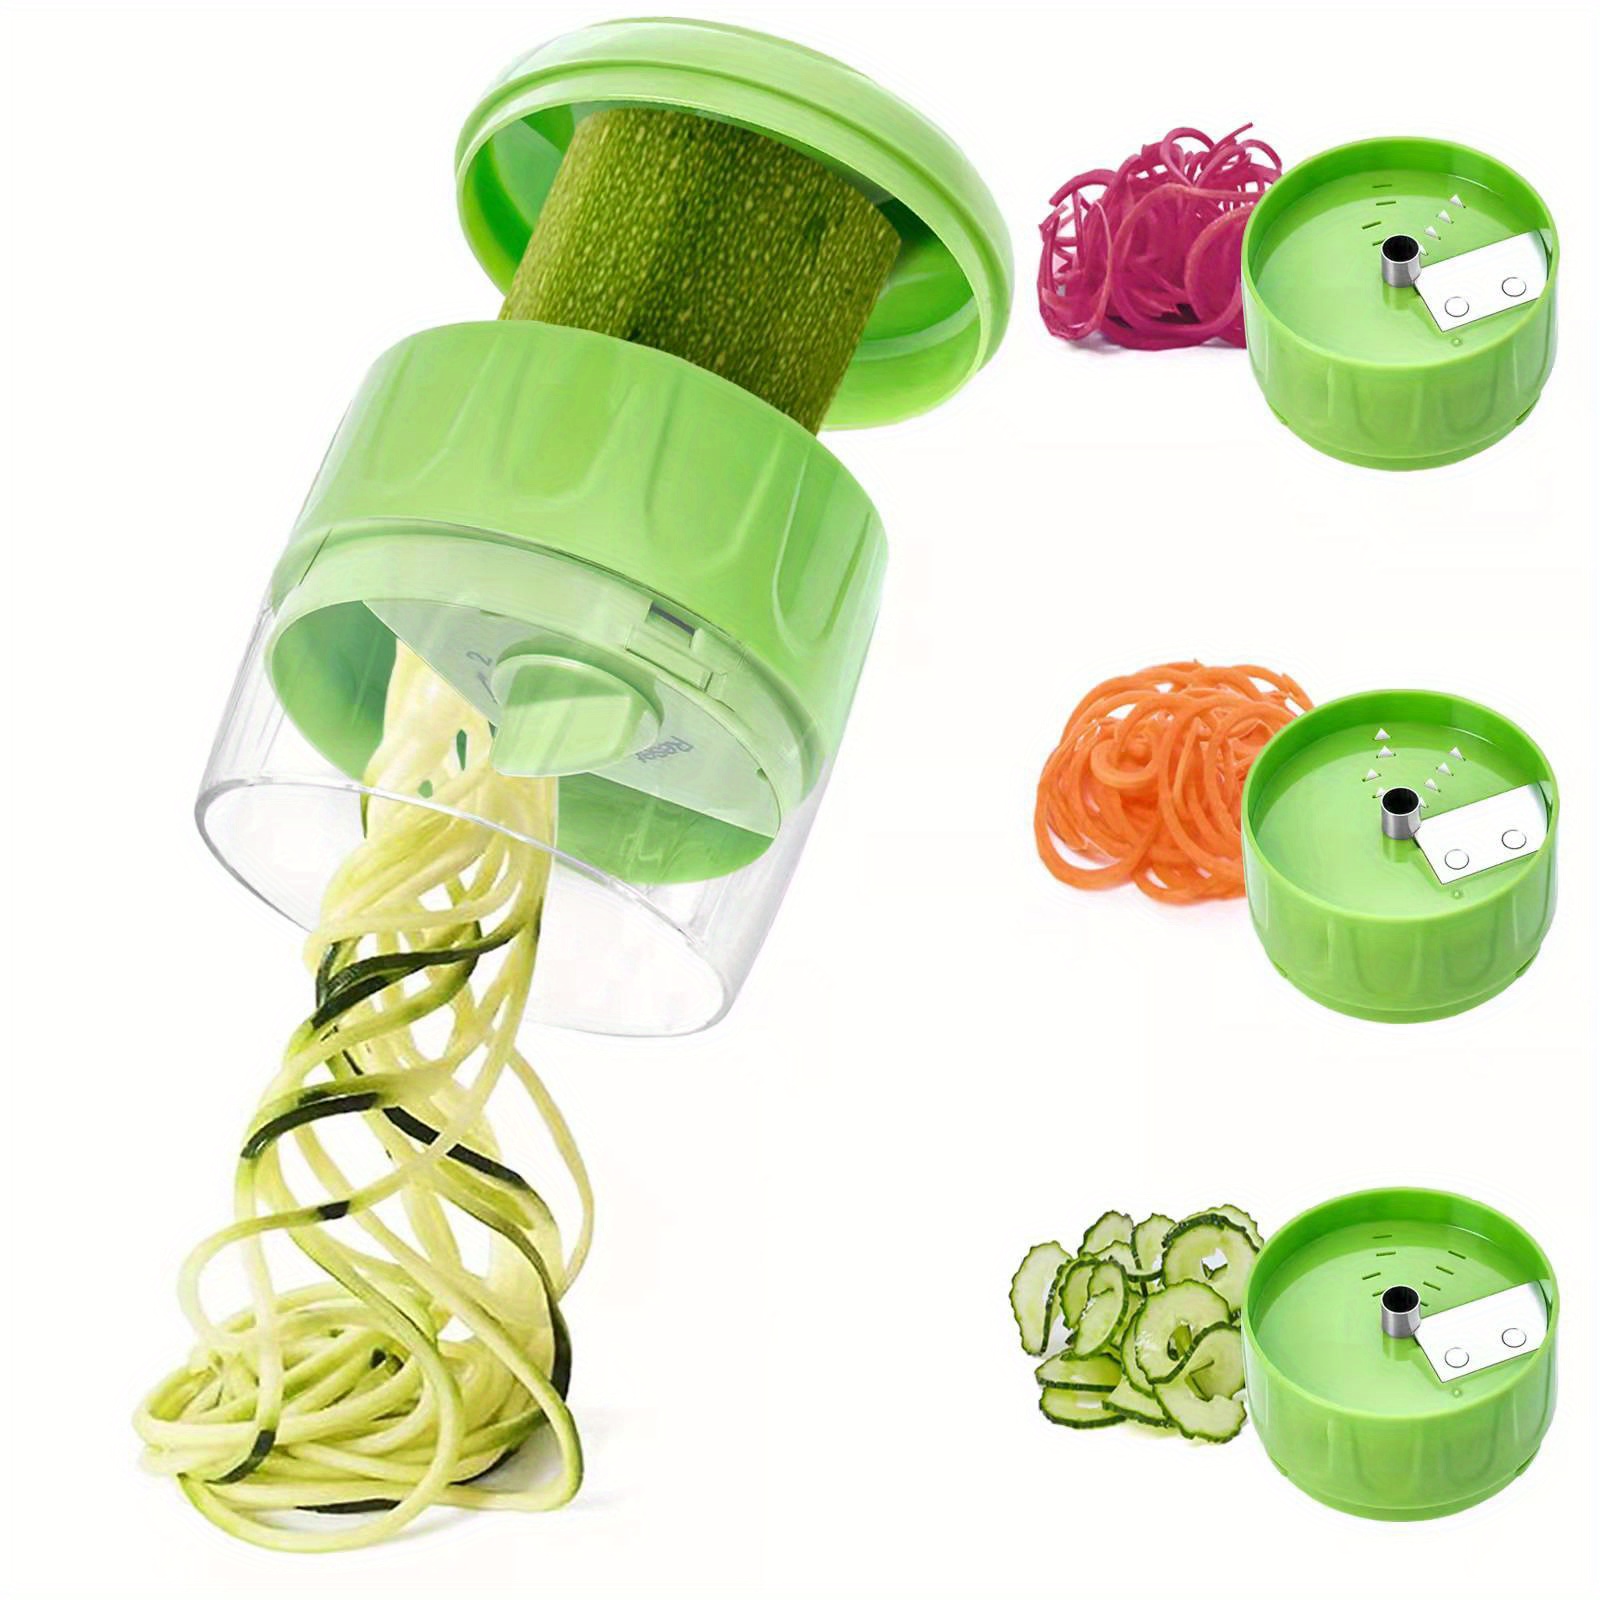 Spiralizer Tri-Blade Vegetable Spiral Slicer Veggie Pasta Maker